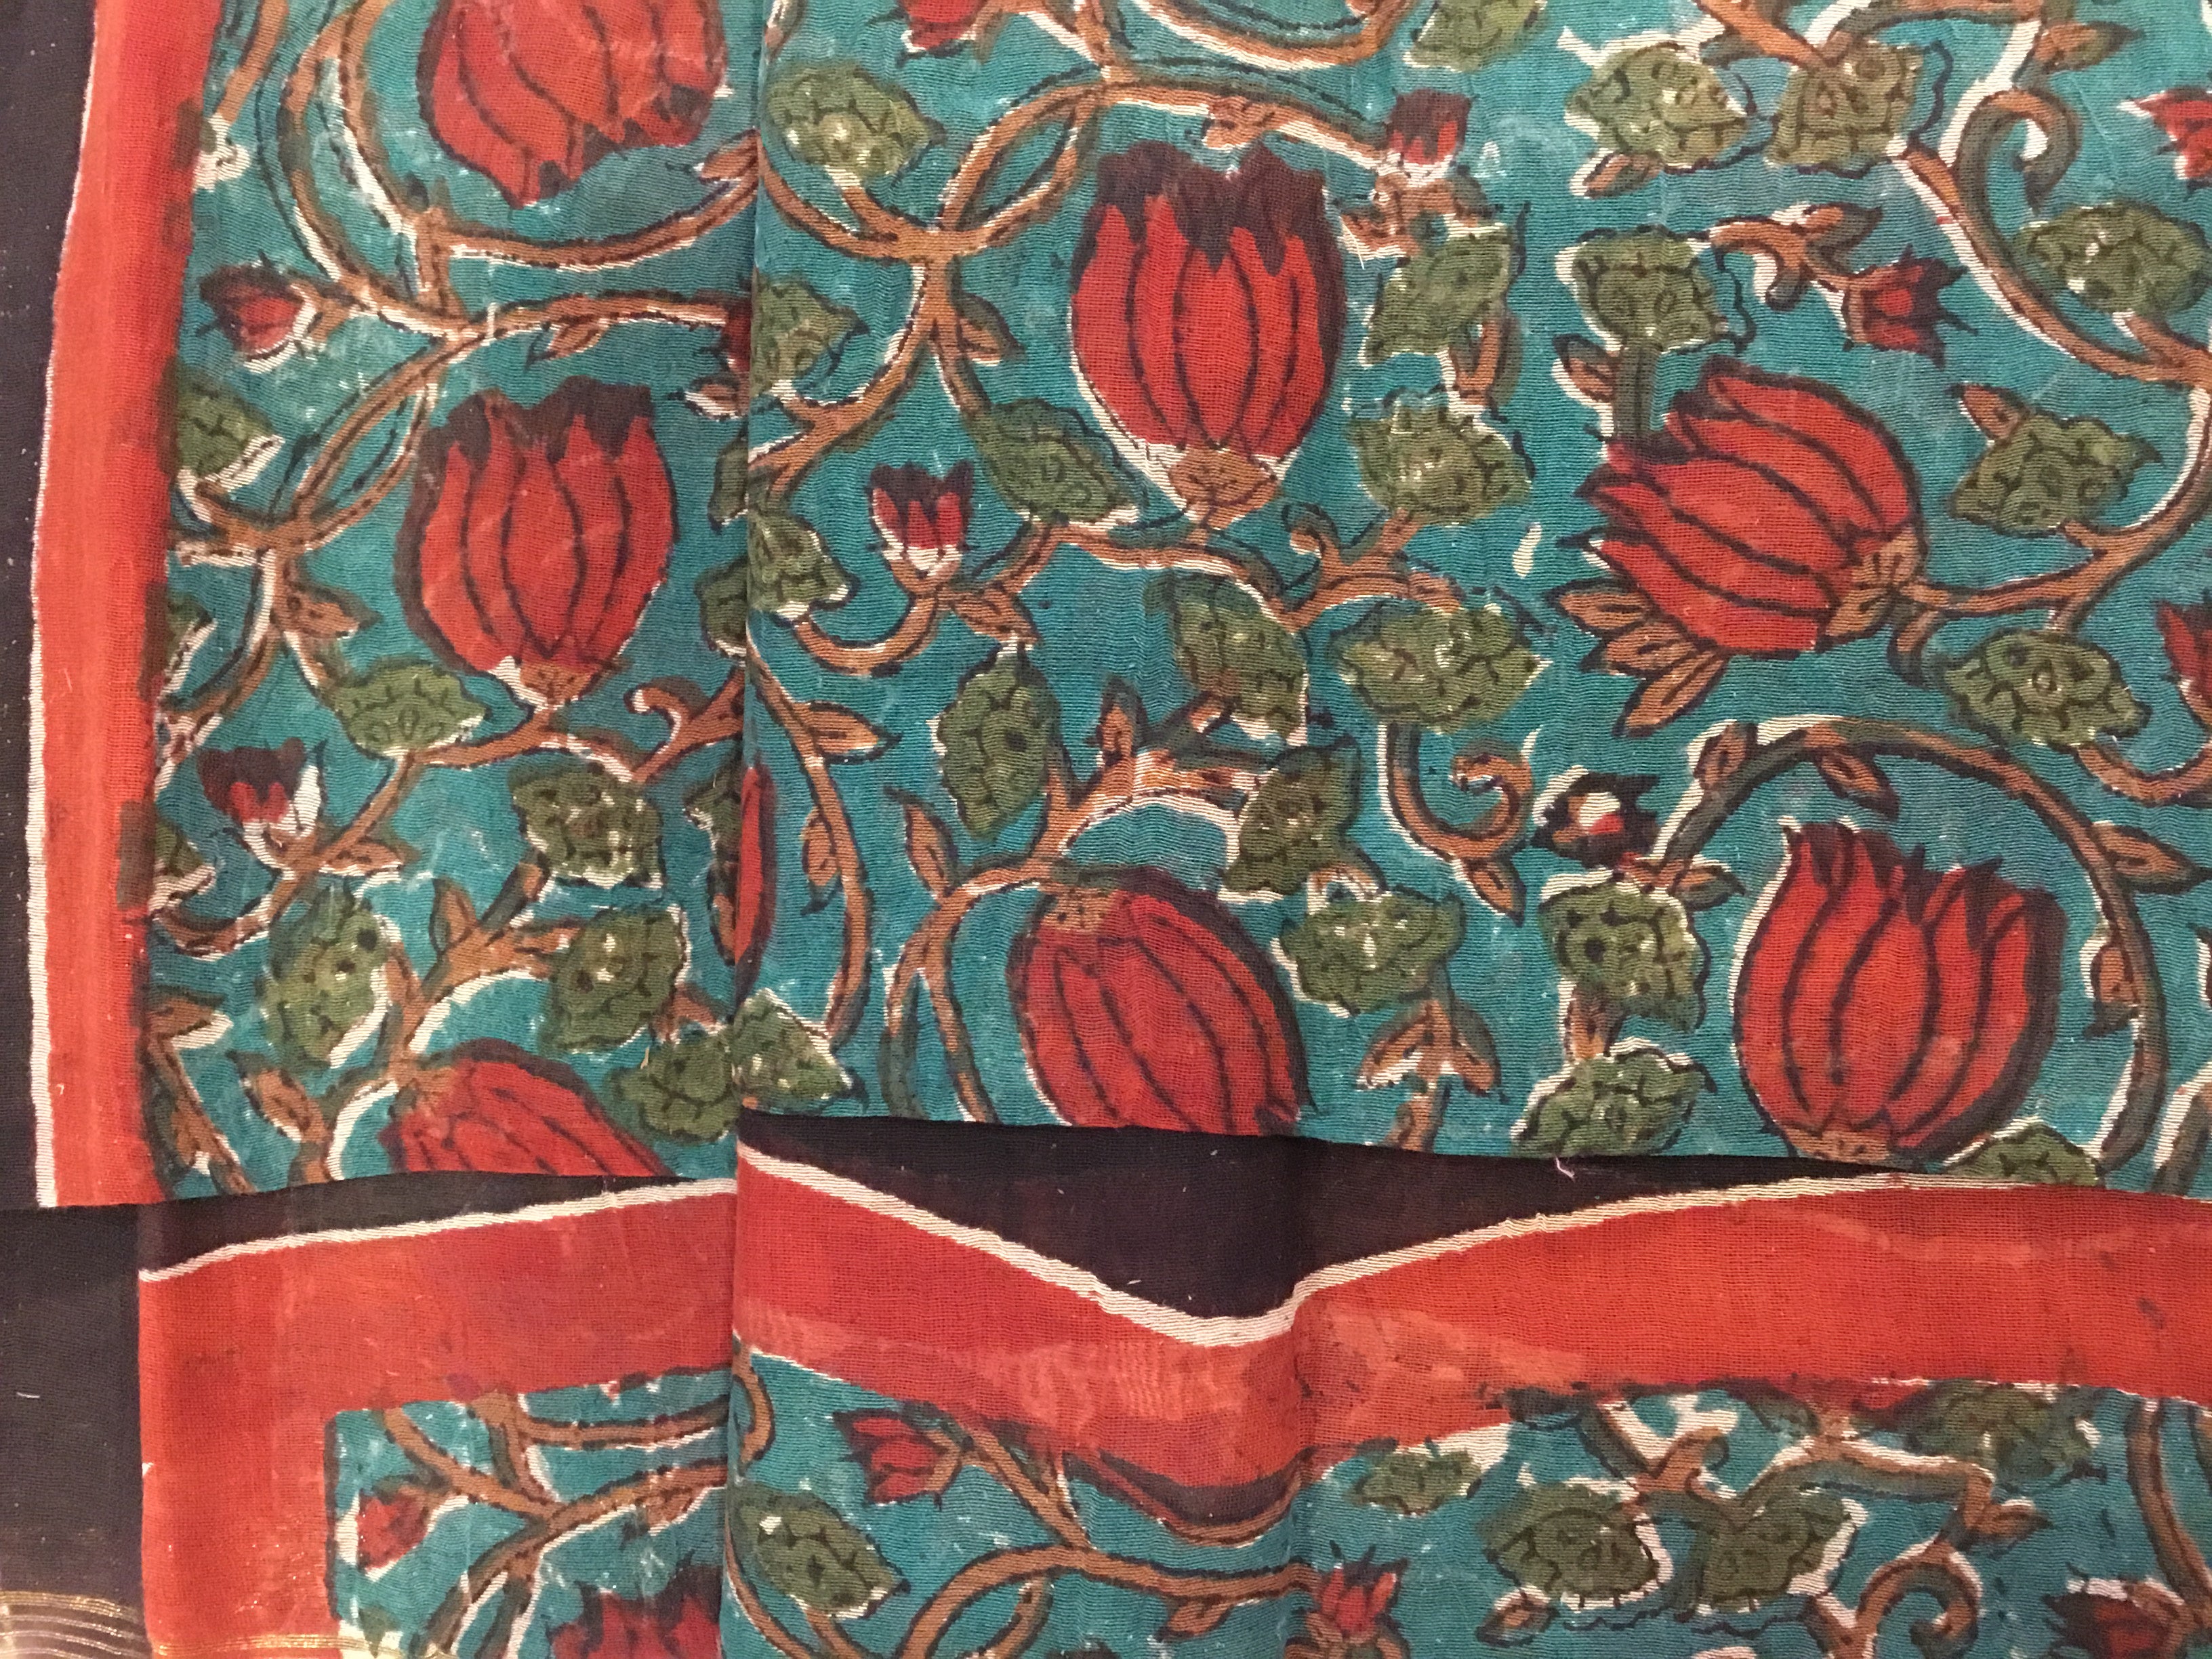 Handblock Printed Chanderi Silk Cotton Scarf - Red Pomegranate Flower